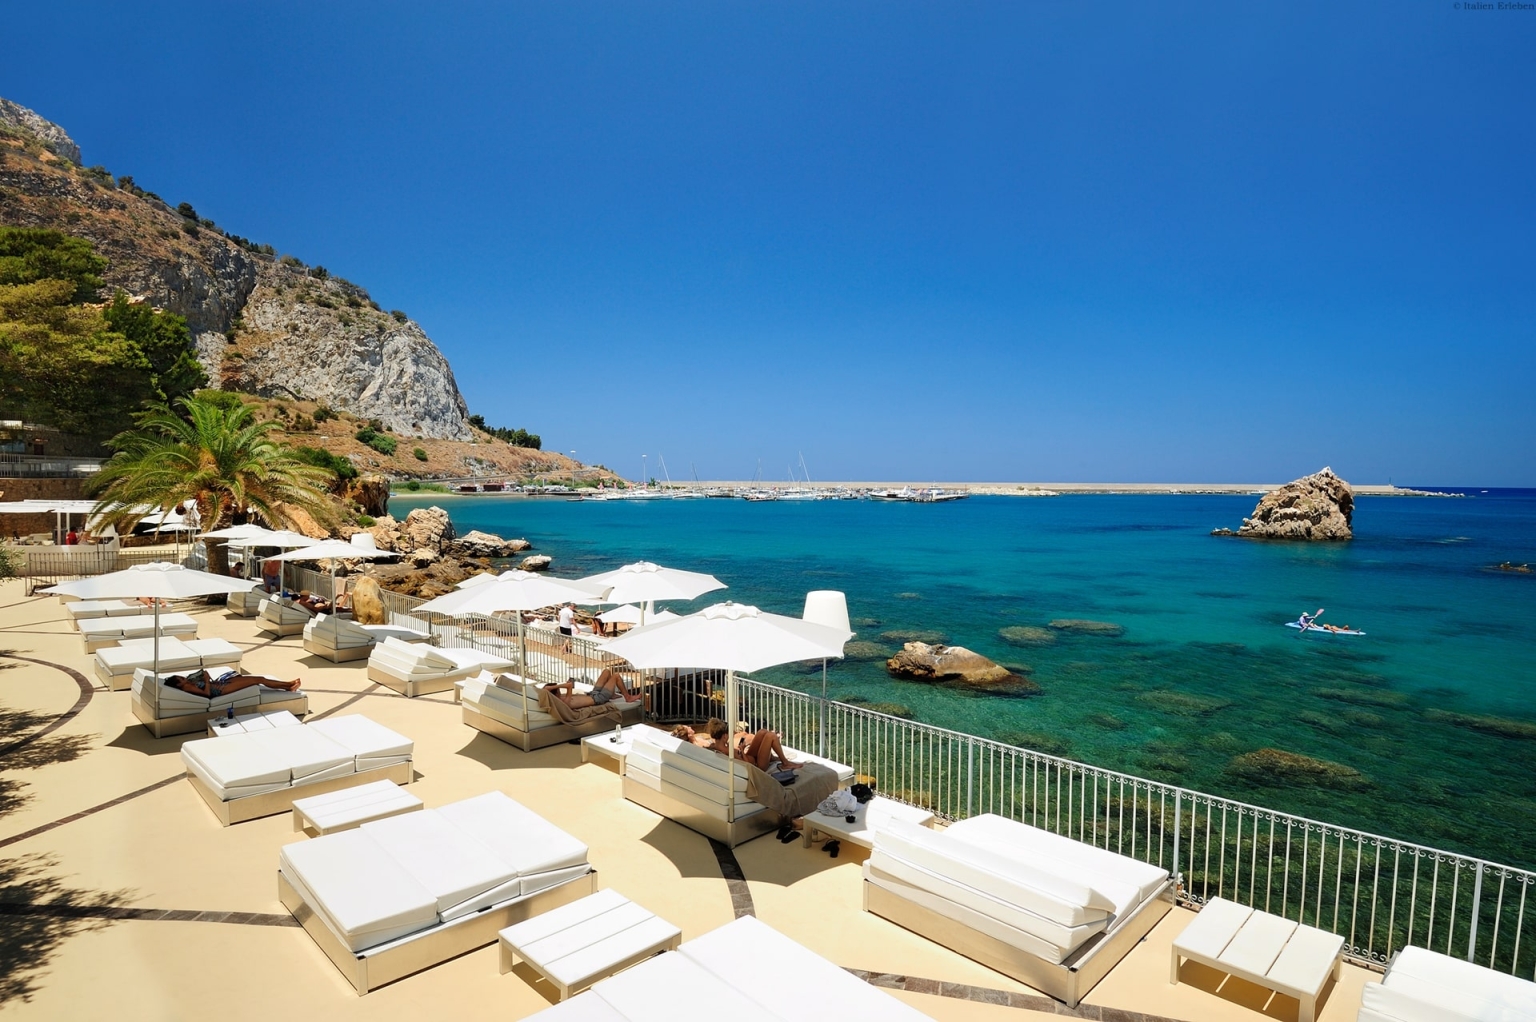 Sizilien Hotel Le Calette Cefalu Meer Resort Anlage Park Garten Bucht Meerzugang Meerblick Liegen Deck